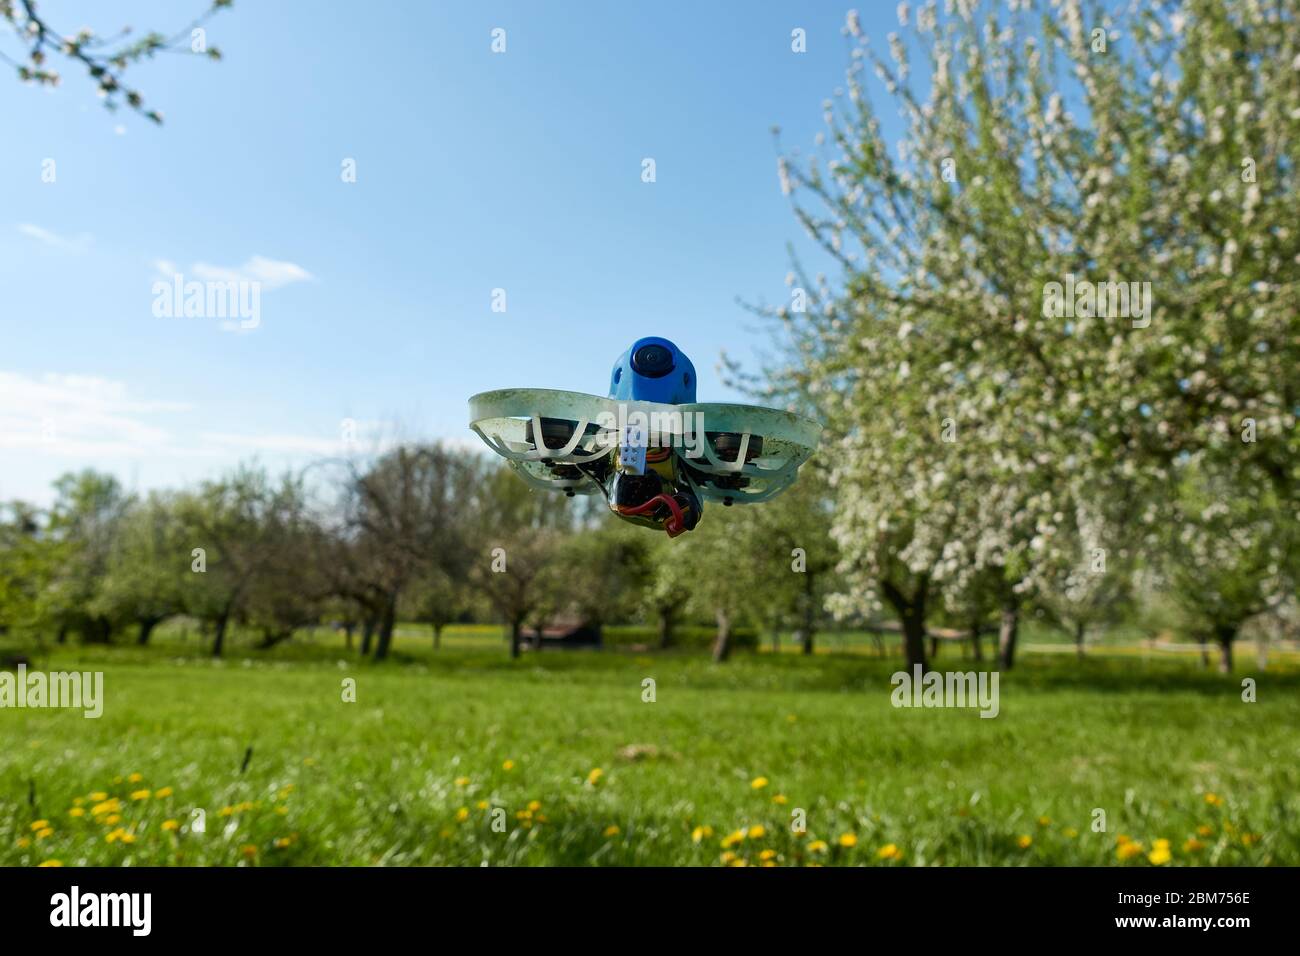 Un petit drone bleu est contrôlé par une caméra vidéo sur un champ vert, l'œil noir pointe vers le pilote.Nuertingen, Allemagne Banque D'Images